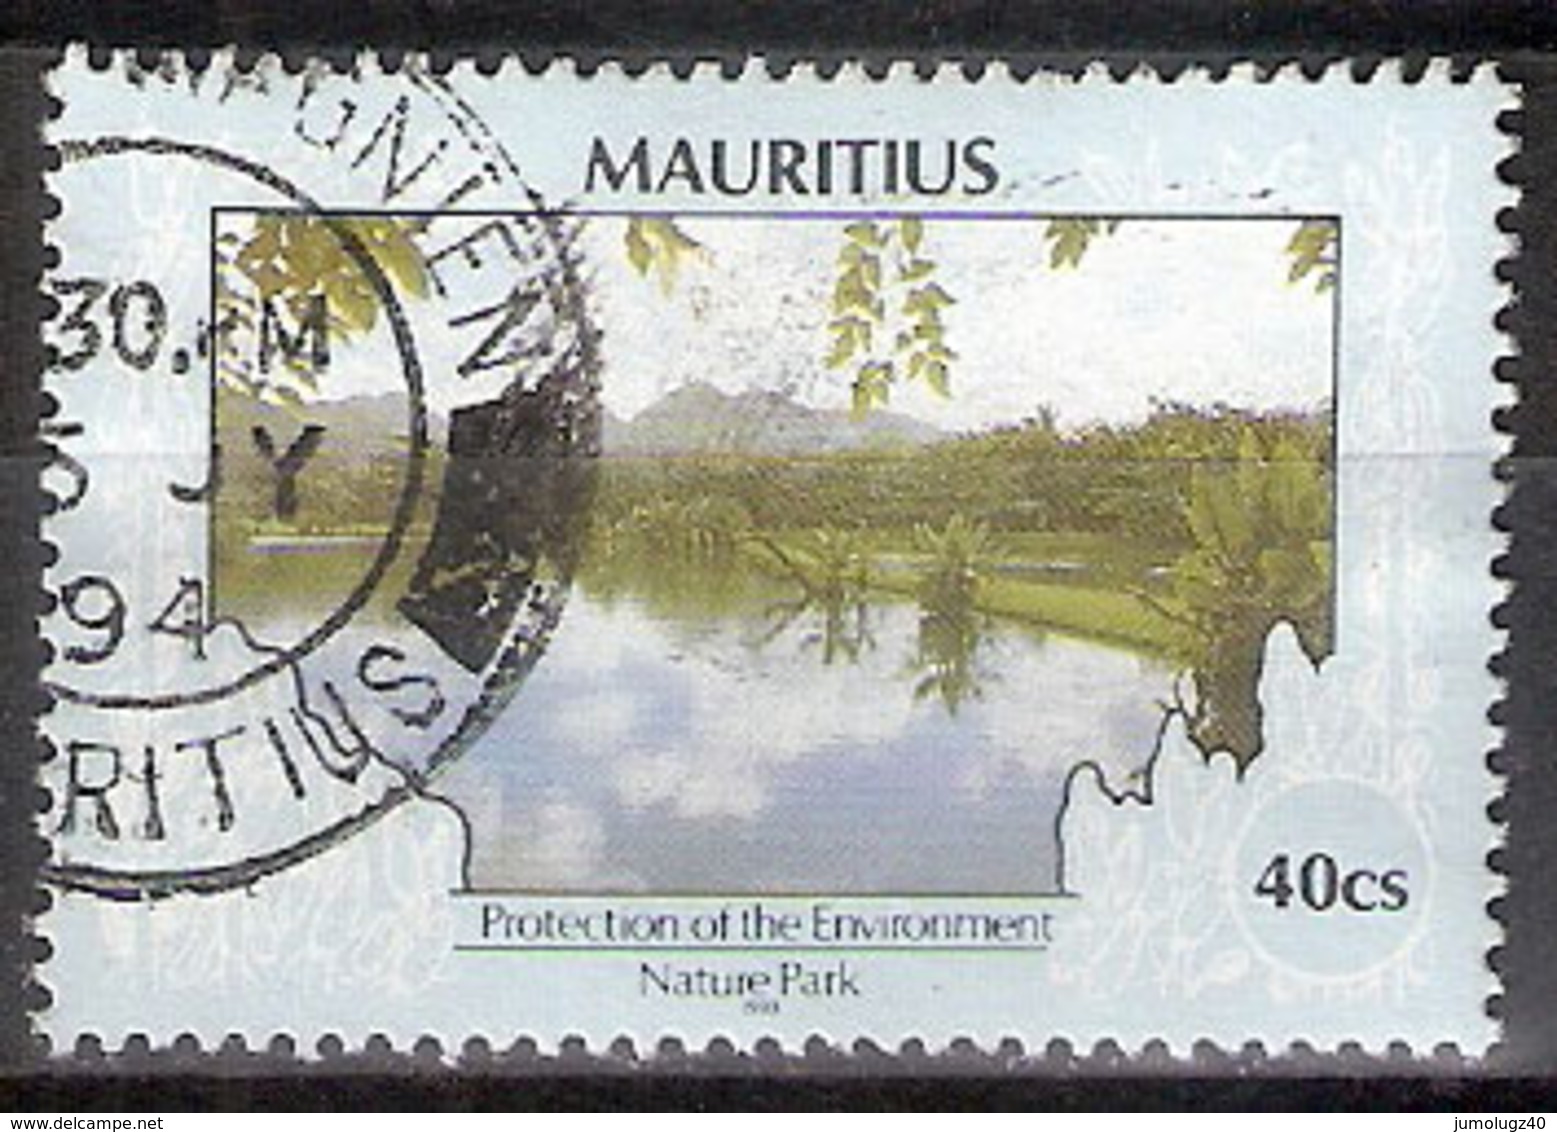 Timbre Maurice 1991 Y&T N°753 (13) Oblitéré. Nature Park 1993. 40Cs. Cote 0.30 € - Maurice (1968-...)